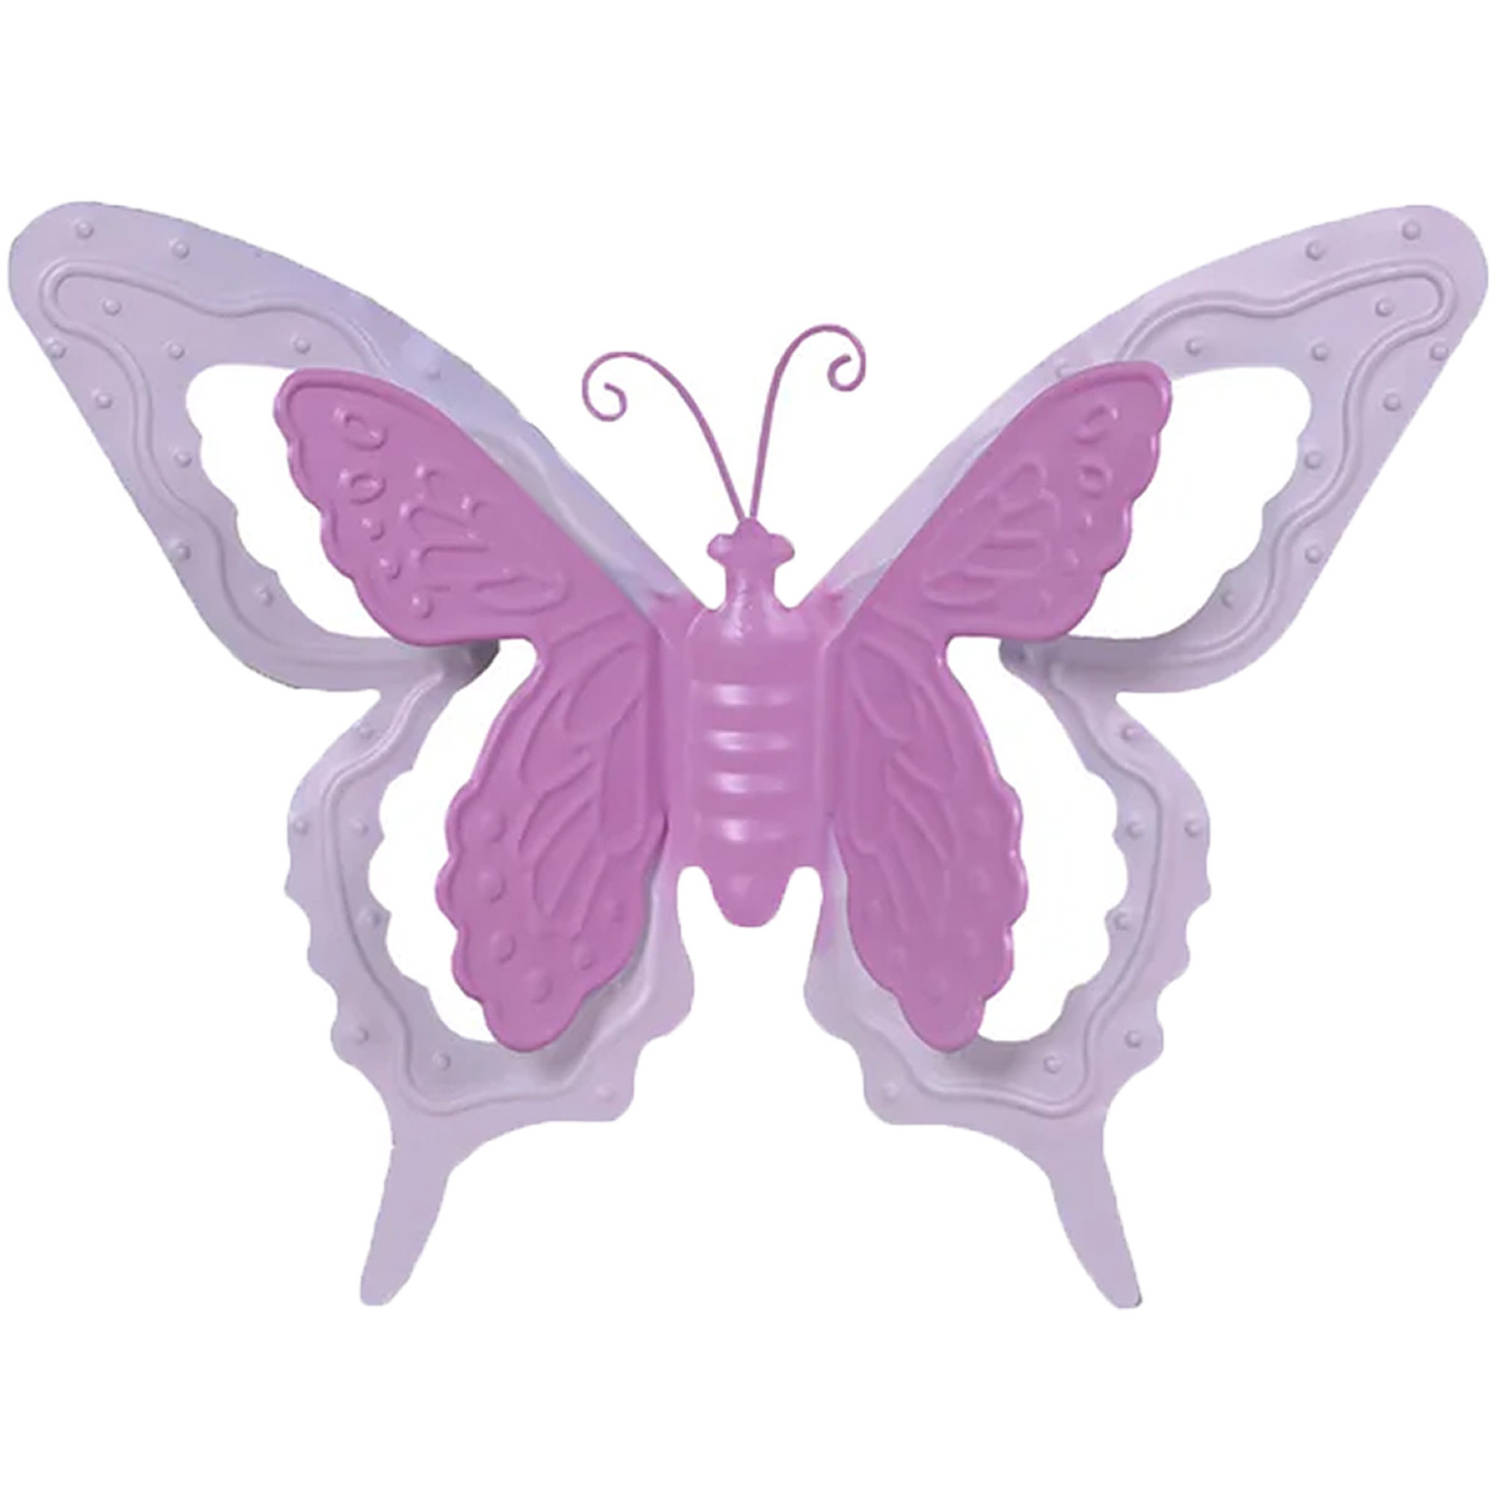 Tuin-schutting decoratie vlinder metaal roze 24 x 18 cm Tuinbeelden